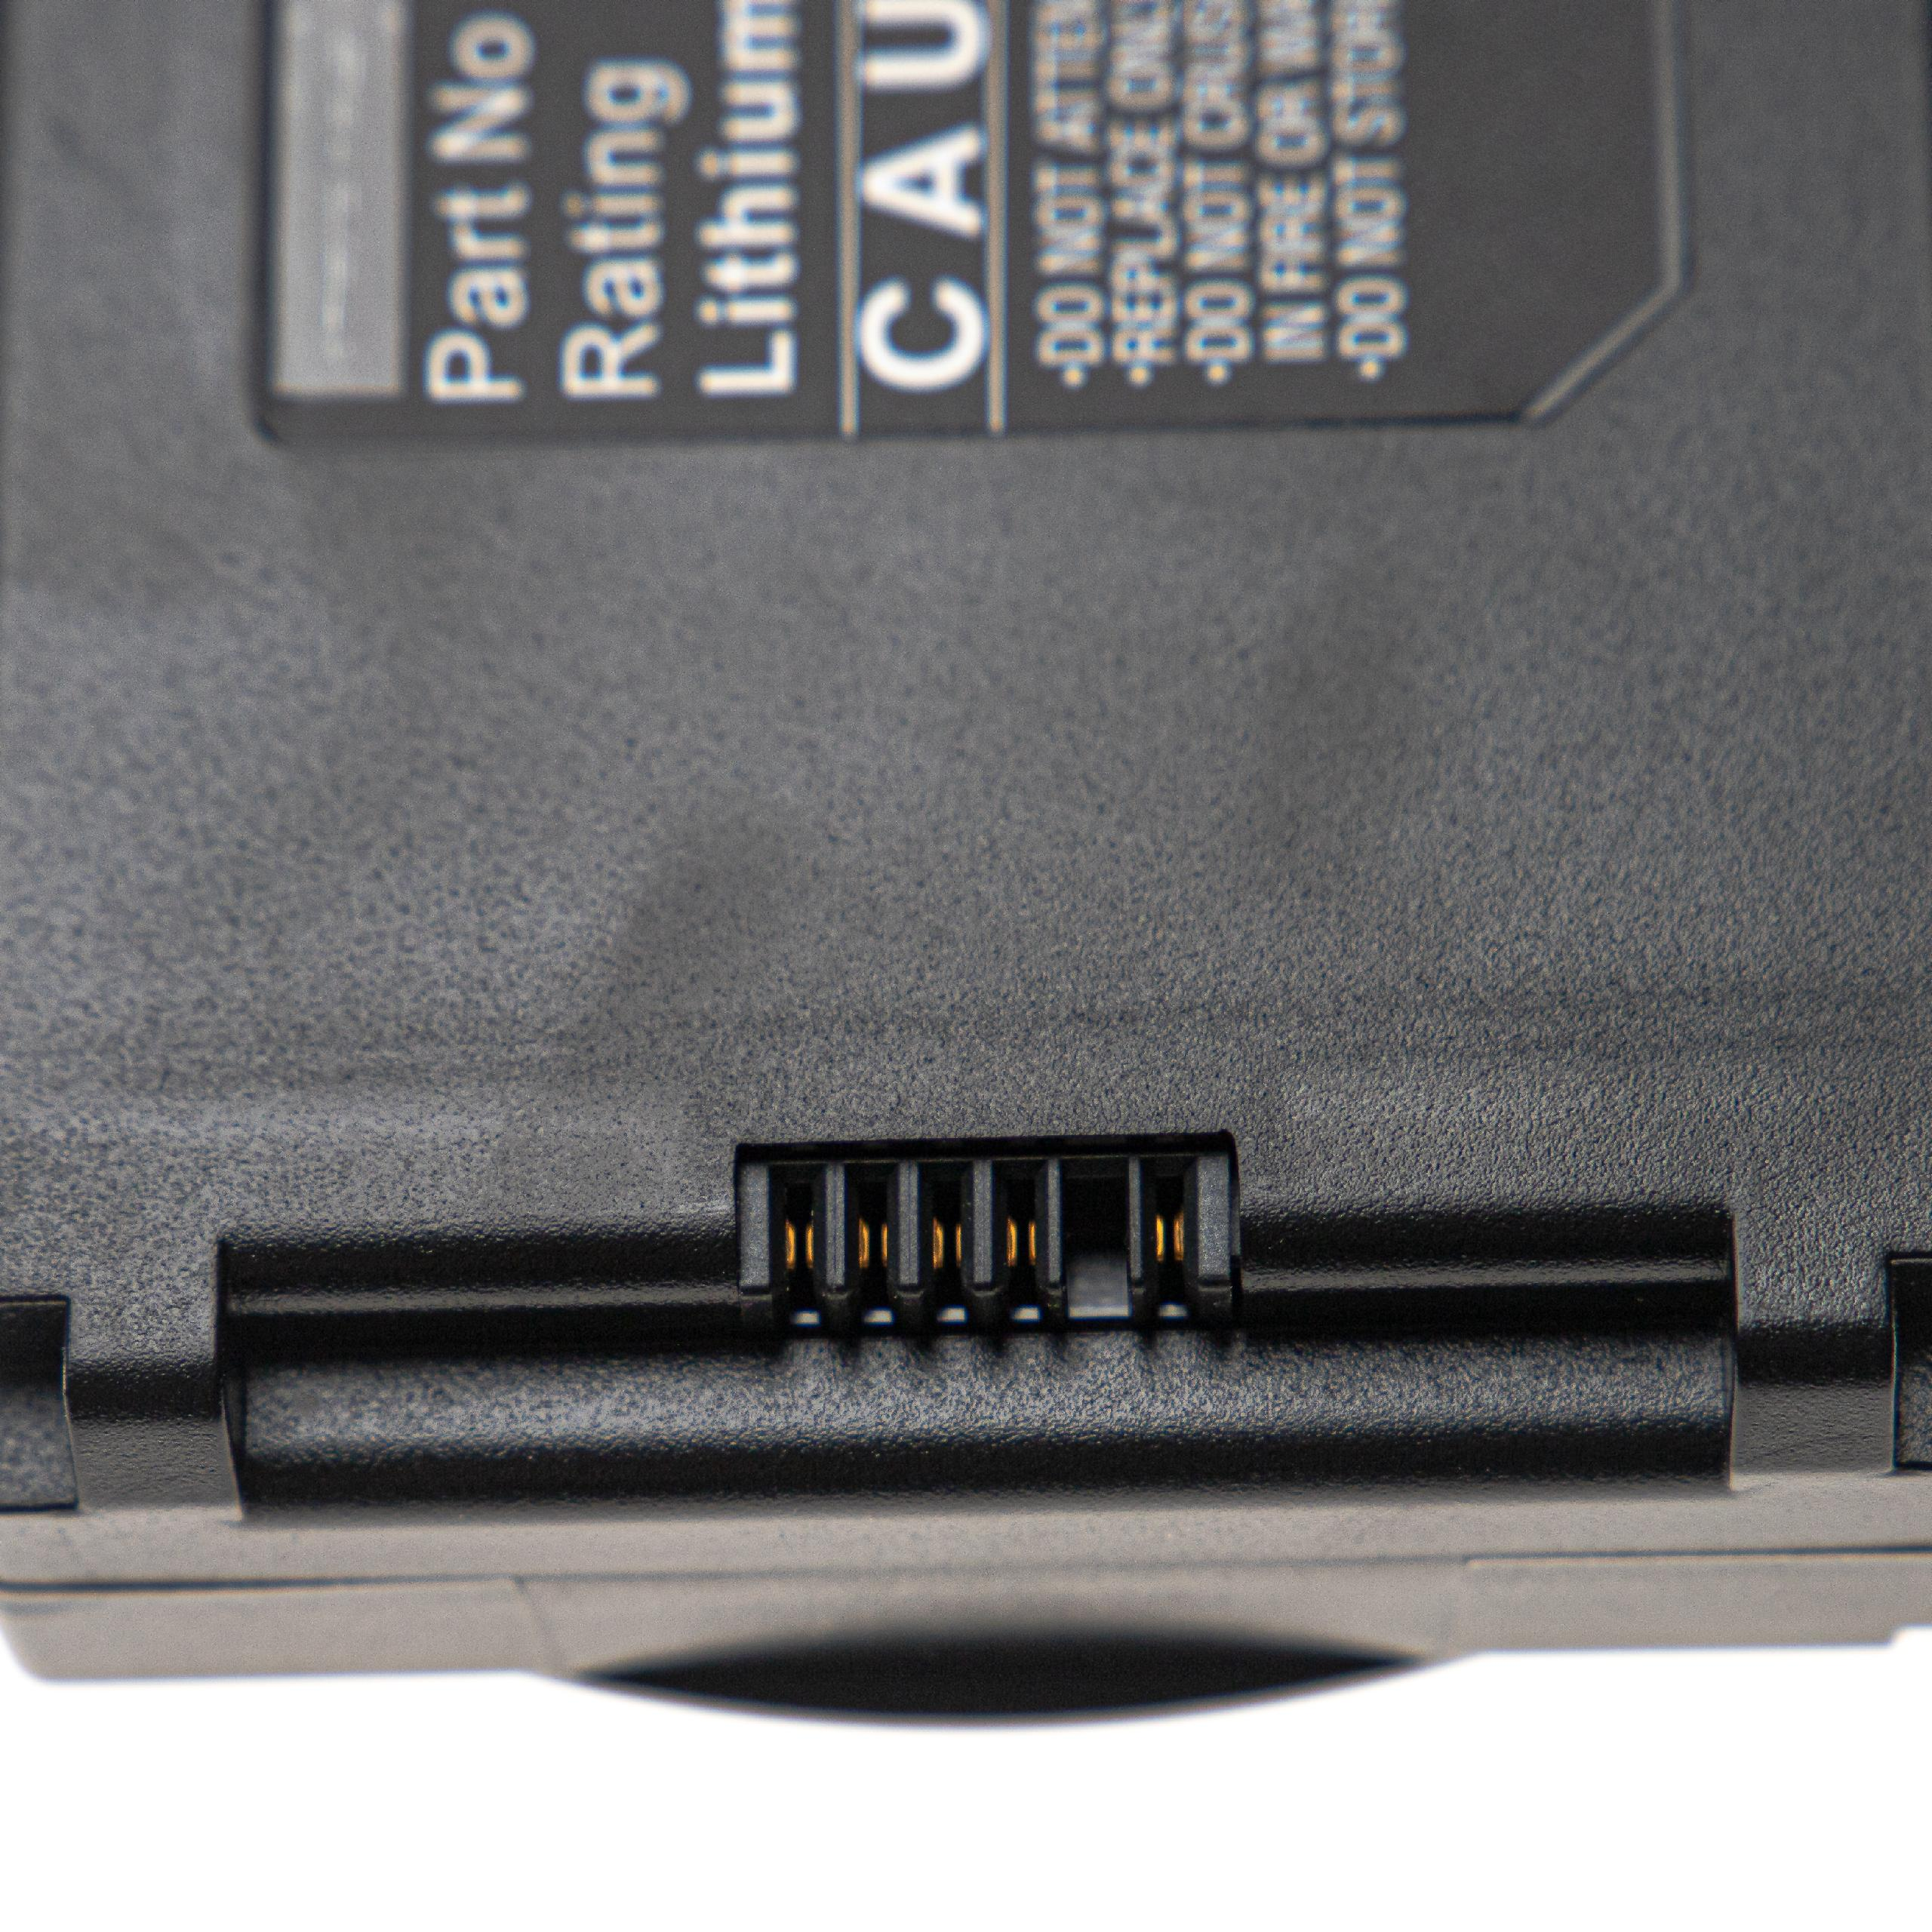 VHBW kompatibel Li-Ion Volt, 6800 - mit 6500, 6400, Allyn Connex Signs Spot Akku VSM 7800 VSM 11.1 Vital VSM Medizintechnik, Welch 6700, VSM